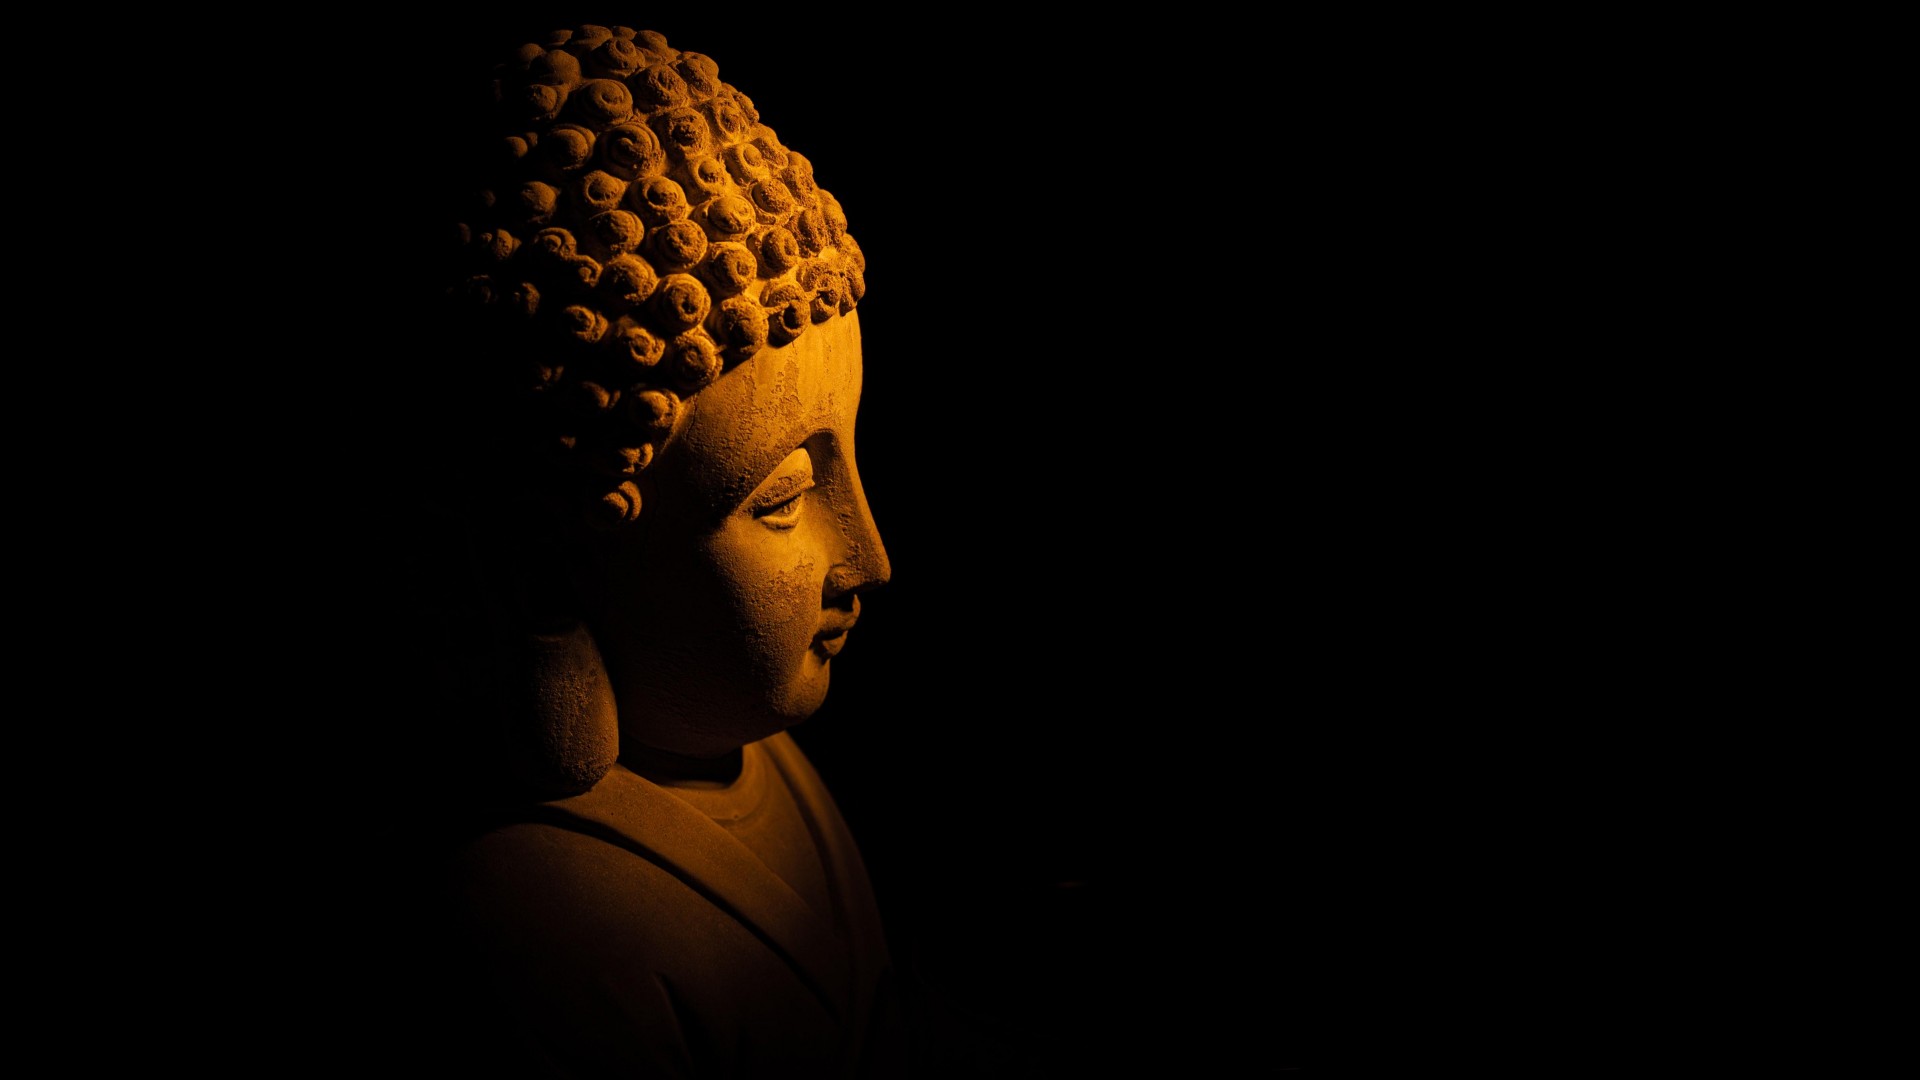 Bộ ảnh Phật 3D là những tác phẩm nghệ thuật độc đáo, đầy màu sắc và sáng tạo. Hãy tìm hiểu về những thông điệp sâu sắc và ý nghĩa đằng sau từng tác phẩm.